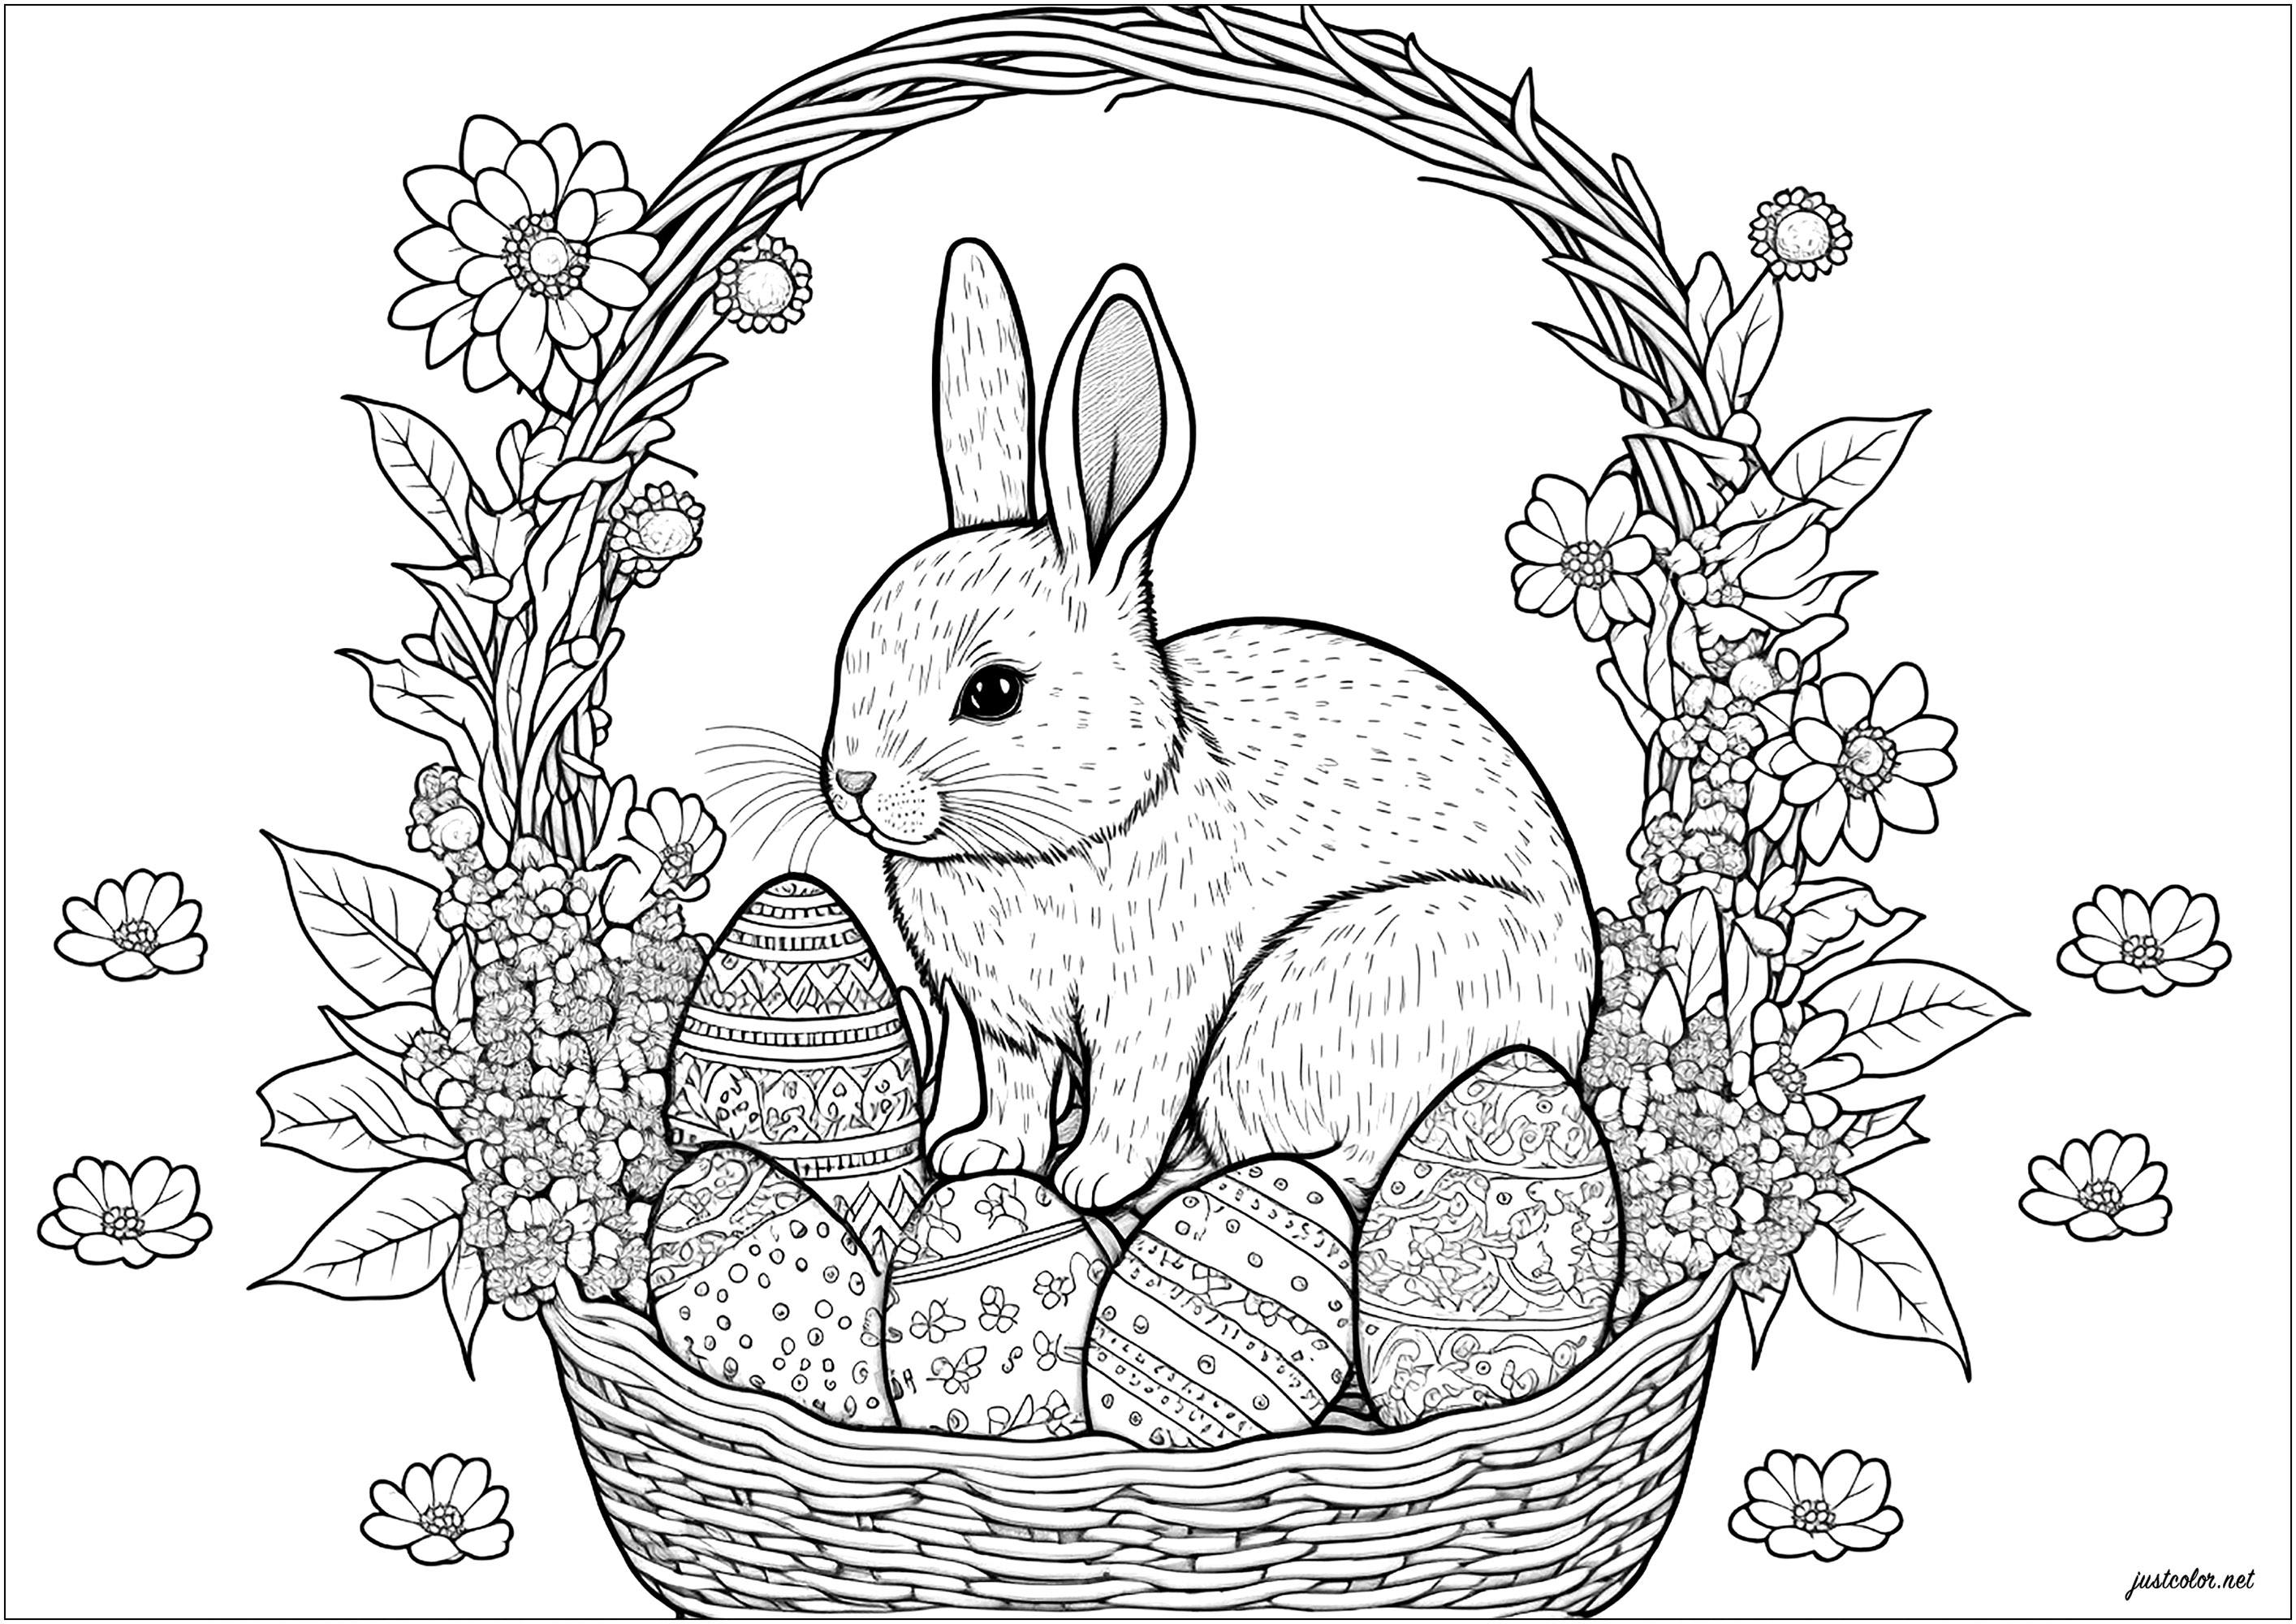 Jolie coloriage d'un panier d'oeufs de Pâques avec un lapin à l'intérieur